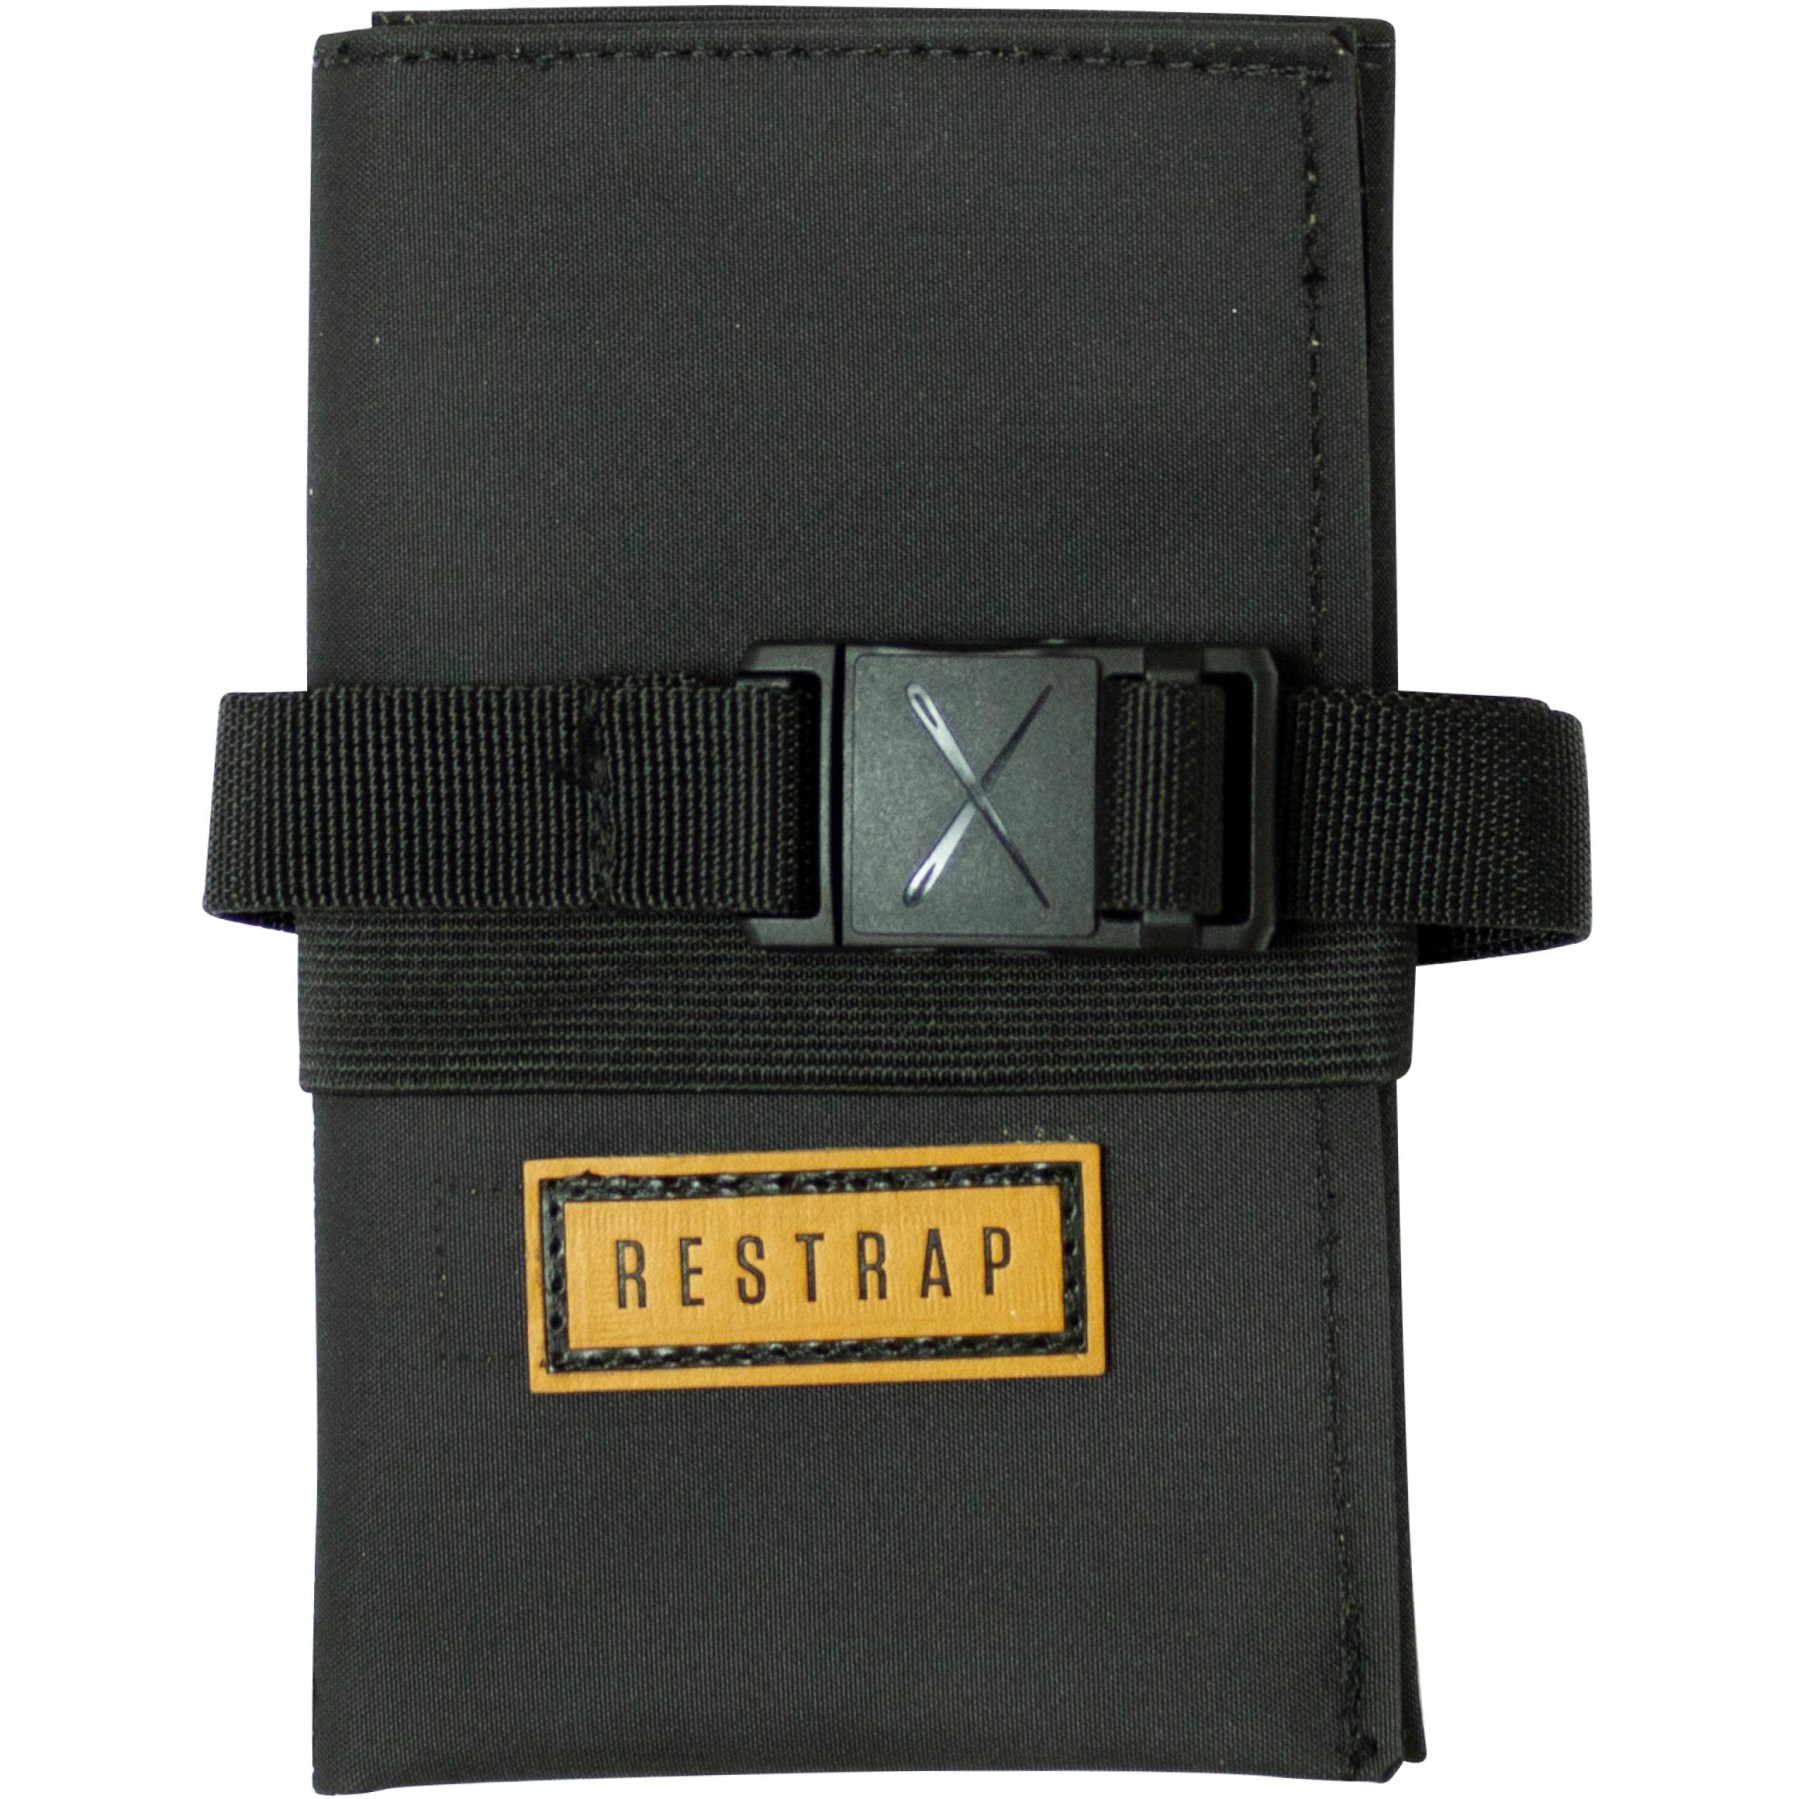 Productfoto van Restrap Tool Roll Bag - black